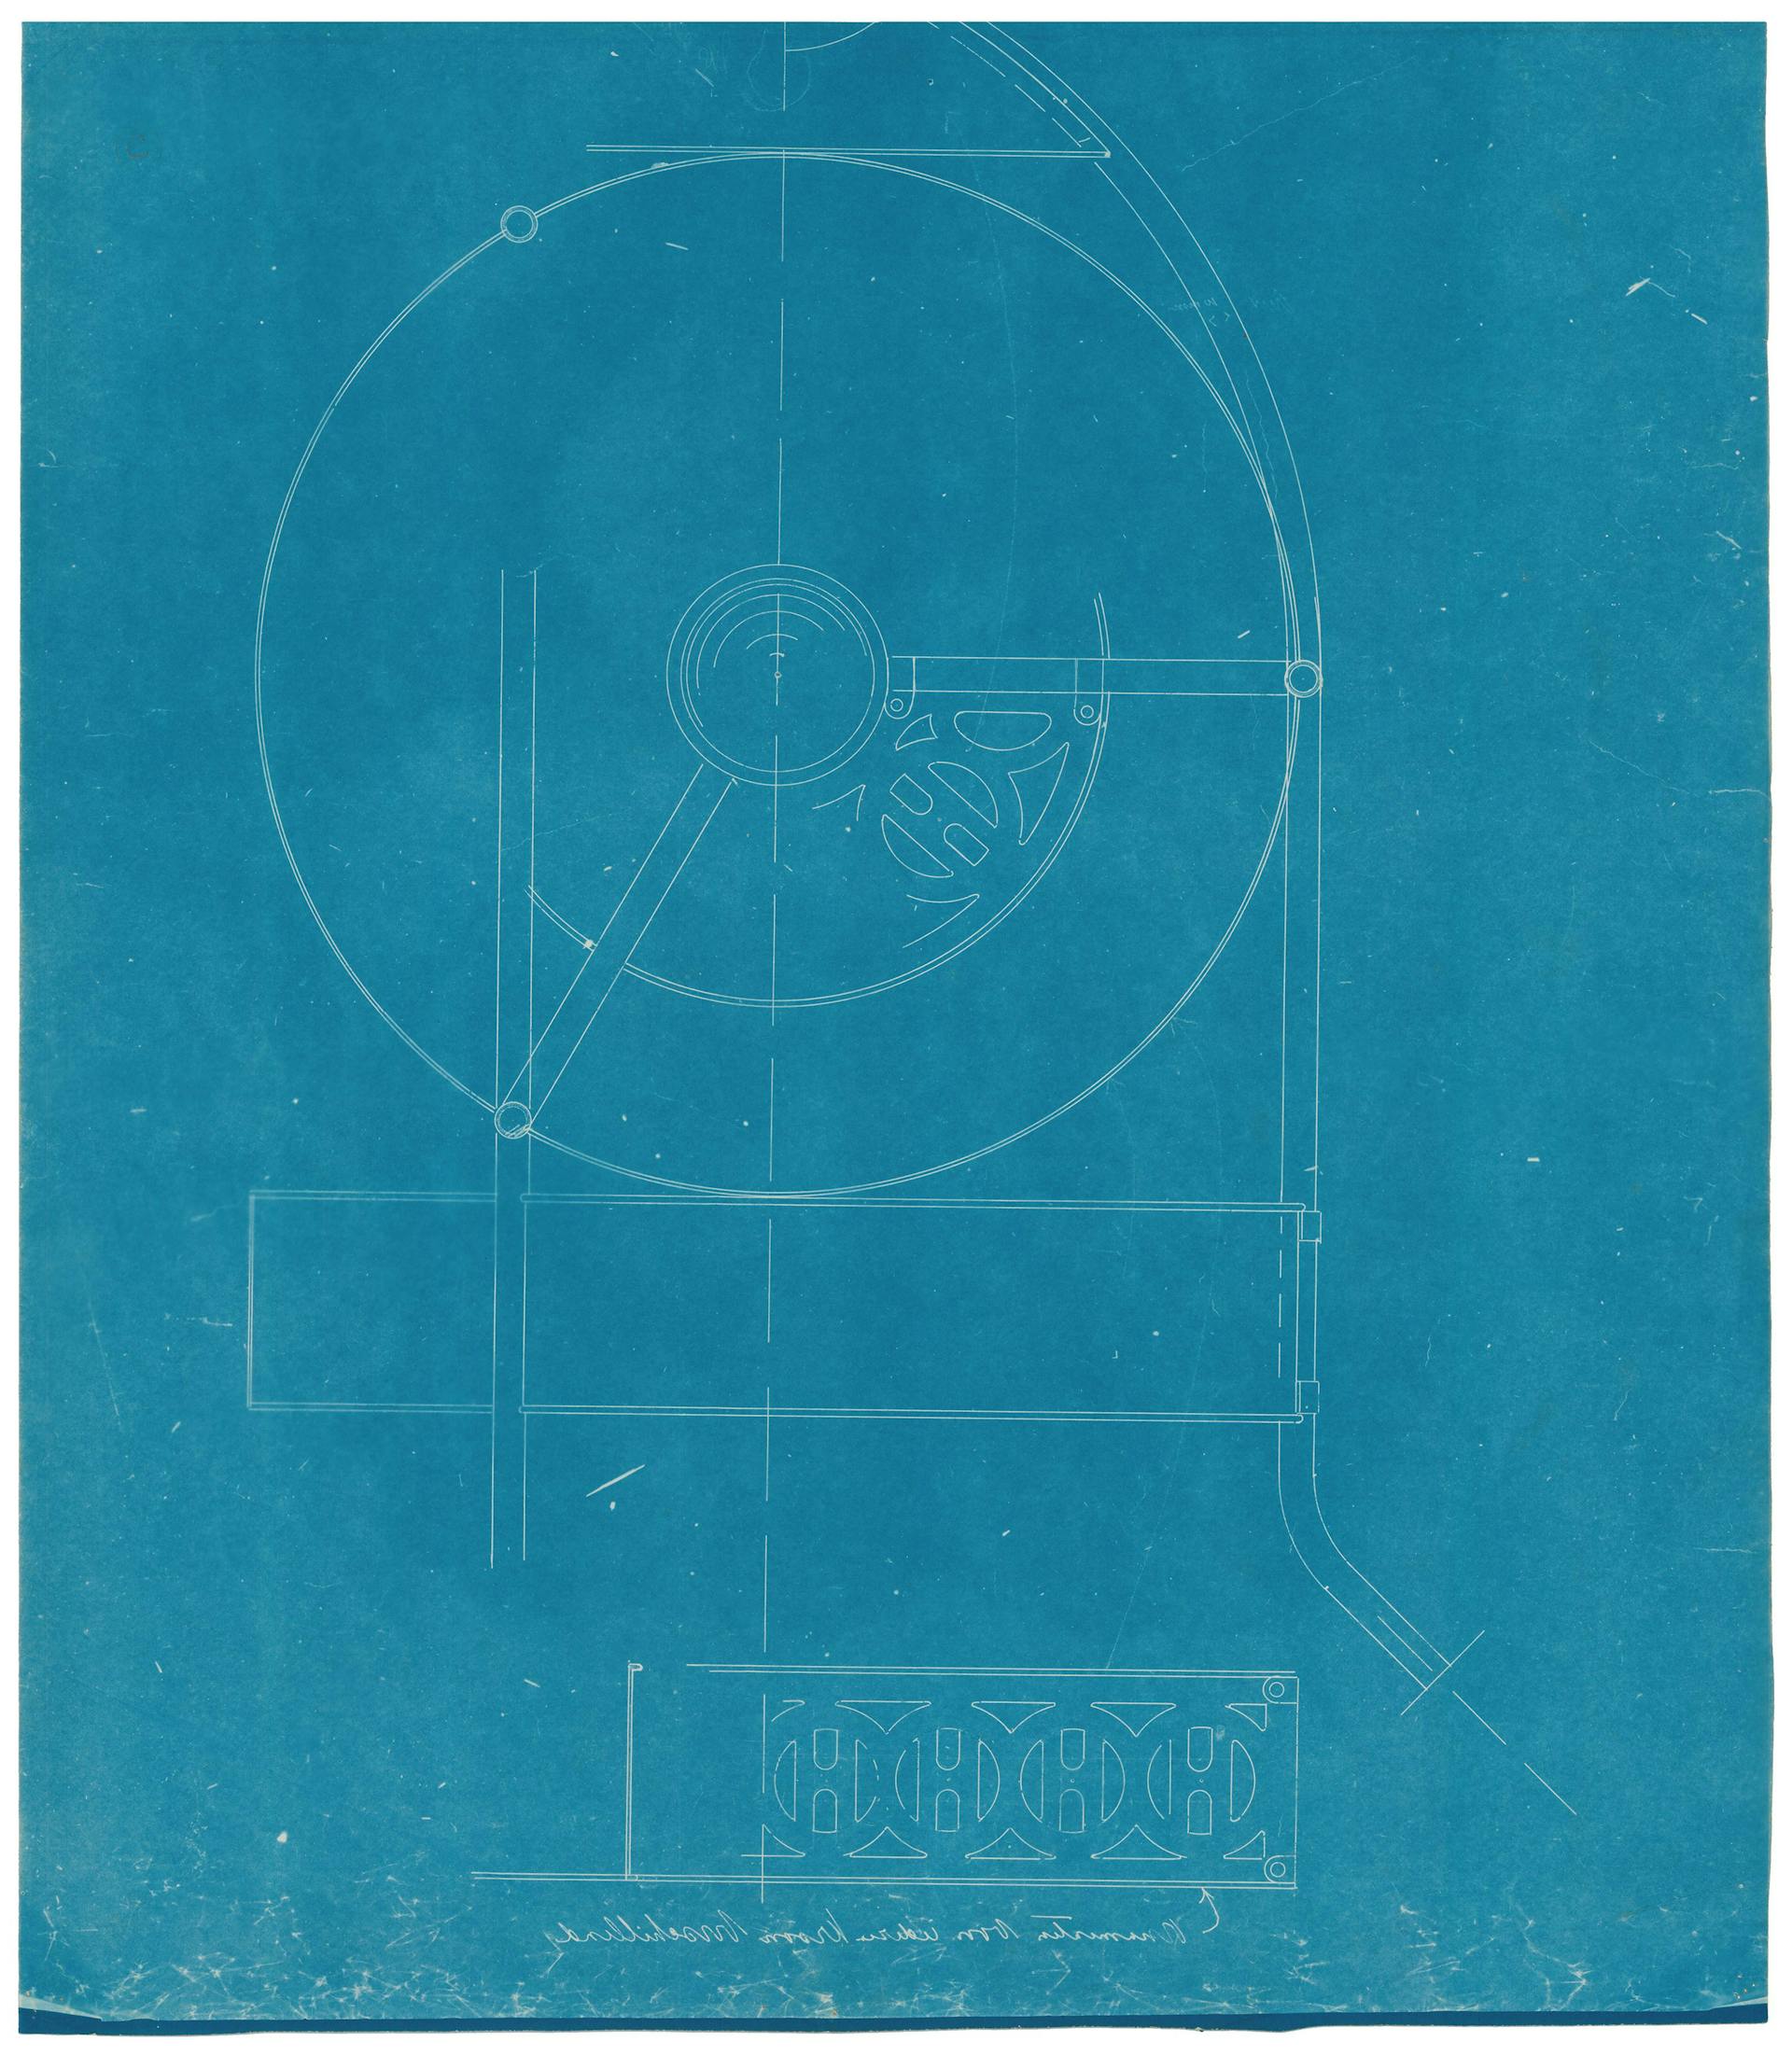 Voorbeeld van een blauwdruk die abusievelijk spiegelbeeldig is afgedrukt. De blauwdruk is bovendien heel onregelmatig van kleur en bevindt zich op de achterkant van BERL 207a. H.P. Berlage. Ontwerp voor de Koopmansbeurs aan het Damrak in Amster… 